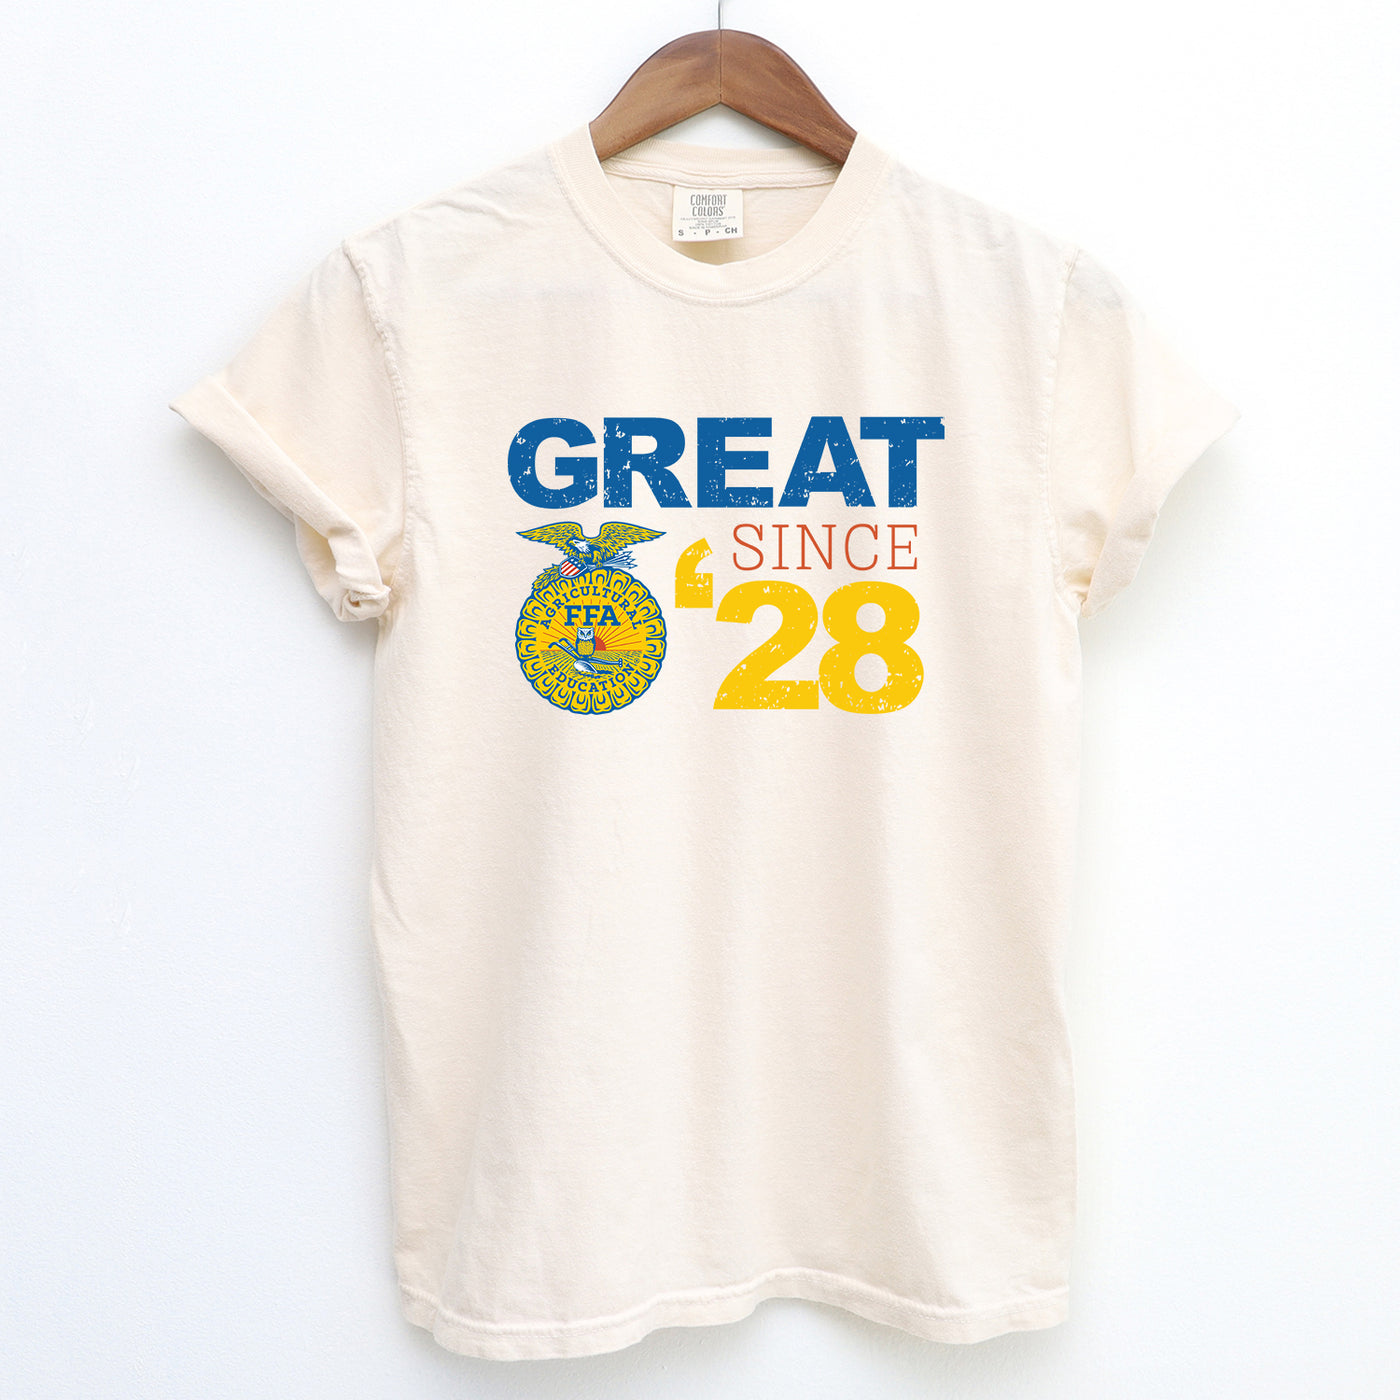 Great Since 28 ComfortWash/ComfortColor T-Shirt (S-4XL) - Multiple Colors!